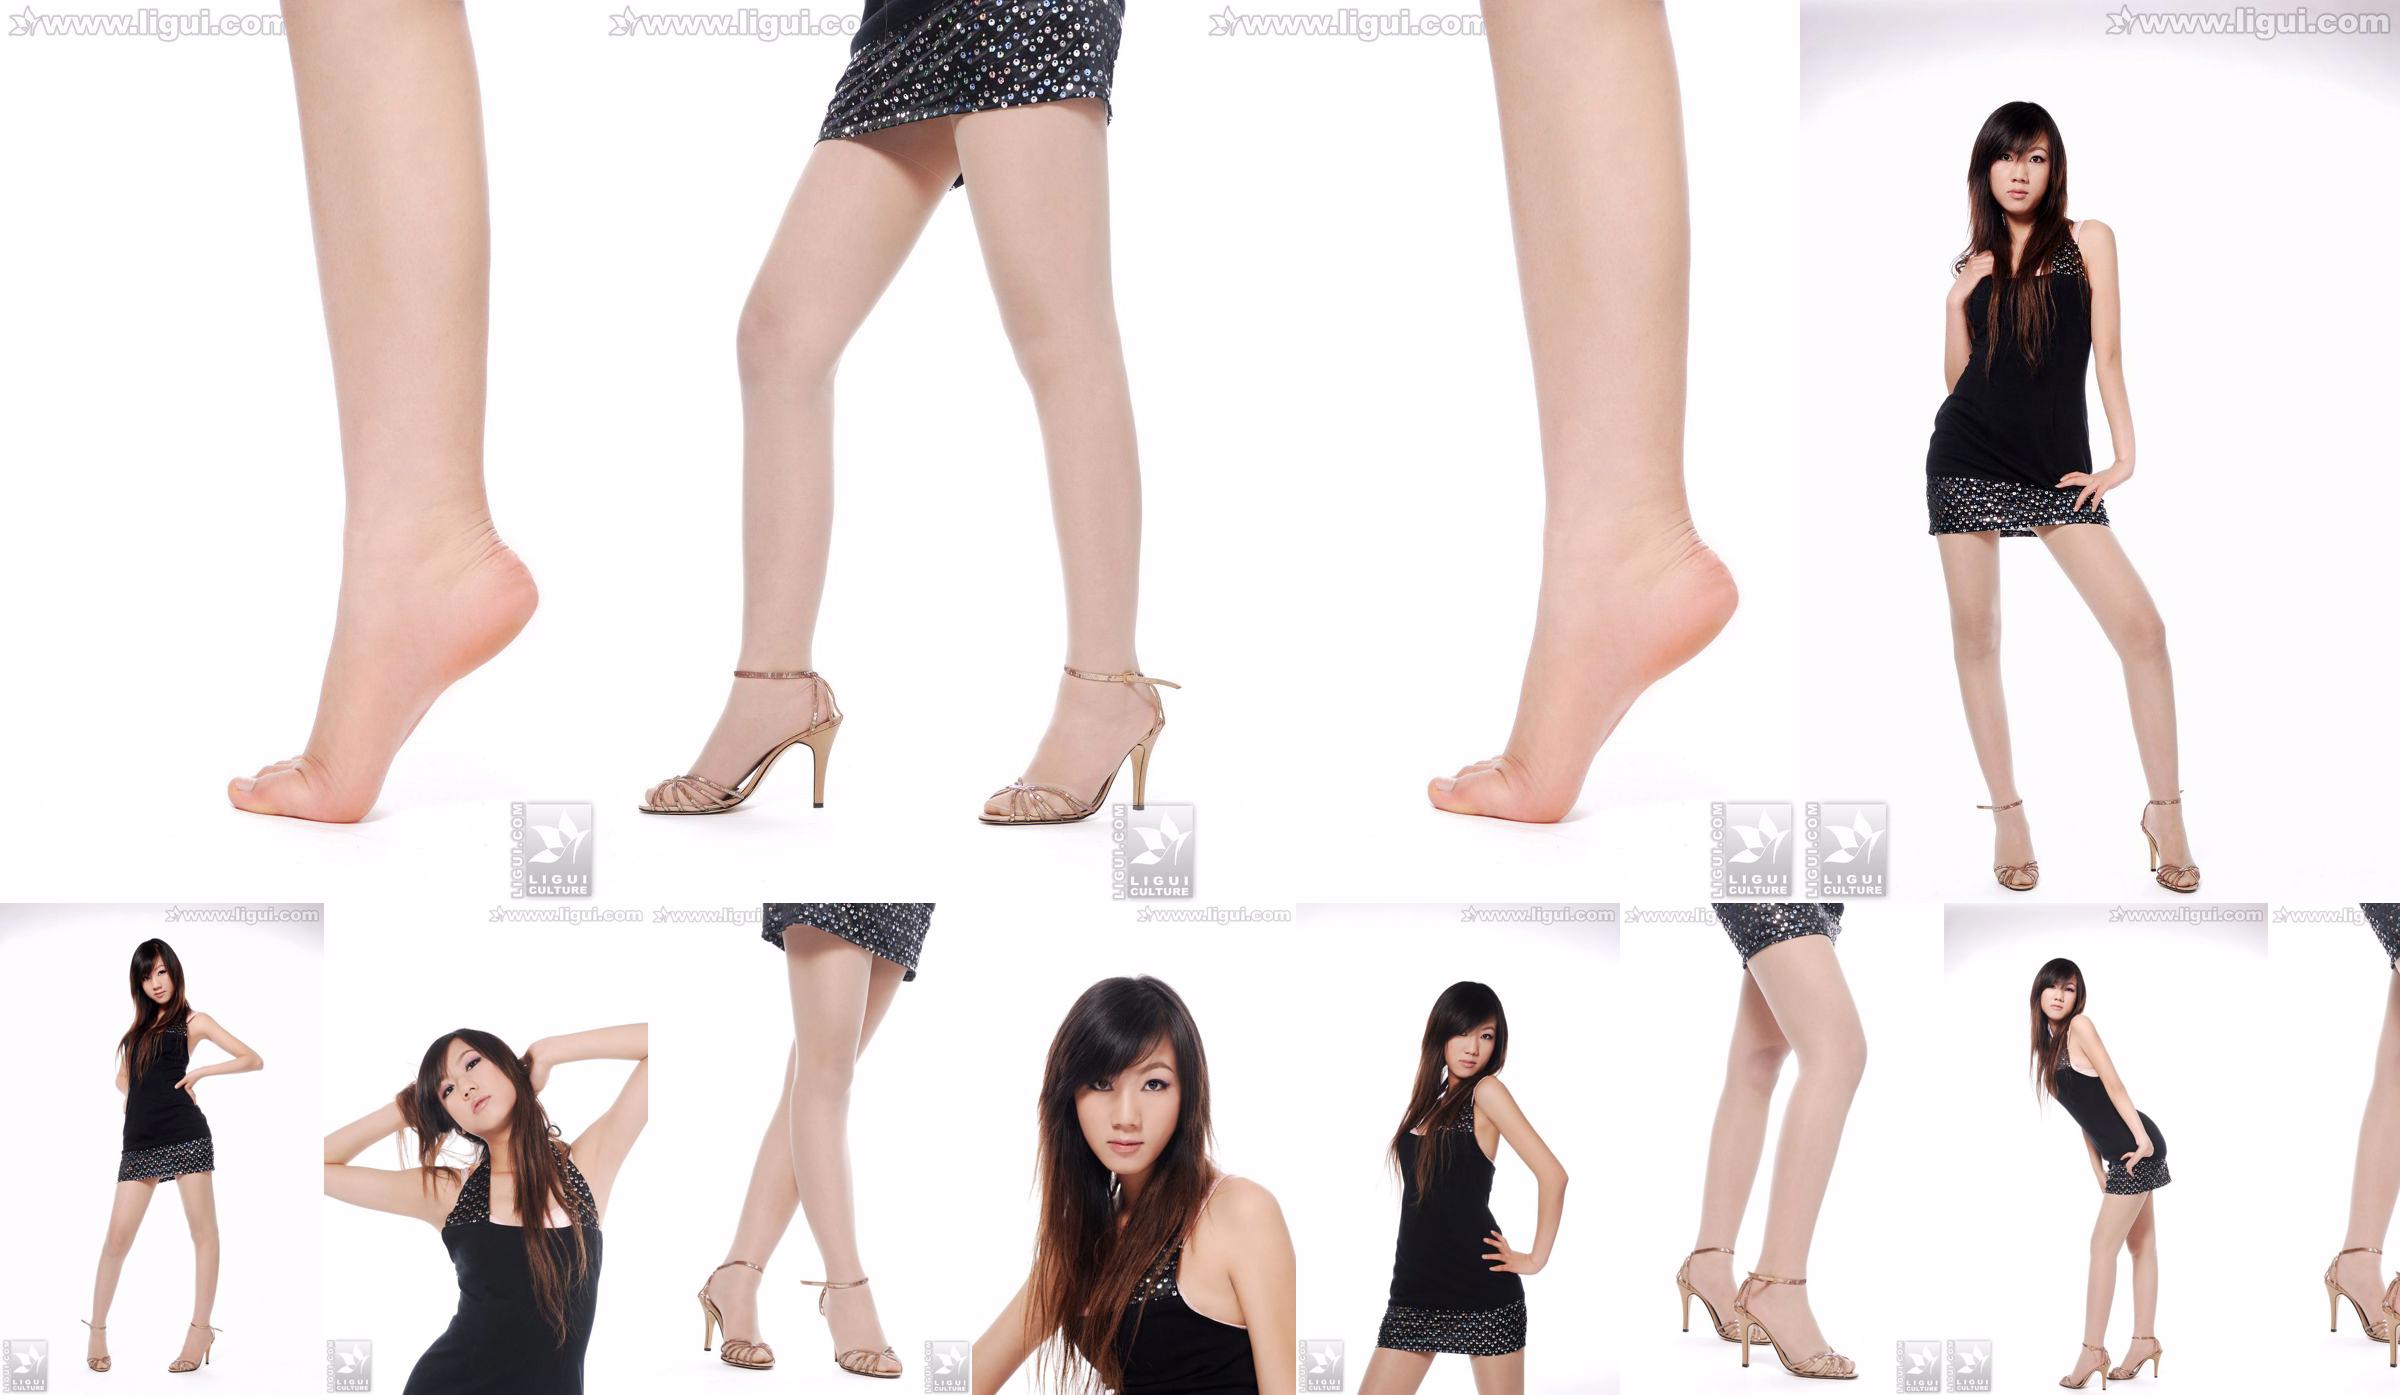 นางแบบ Sheng Chao "ส้นสูงหยกเท้าสวยโชว์ใหม่" [Sheng LiGui] ภาพถ่ายขาสวยและเท้าหยก No.e7943a หน้า 1